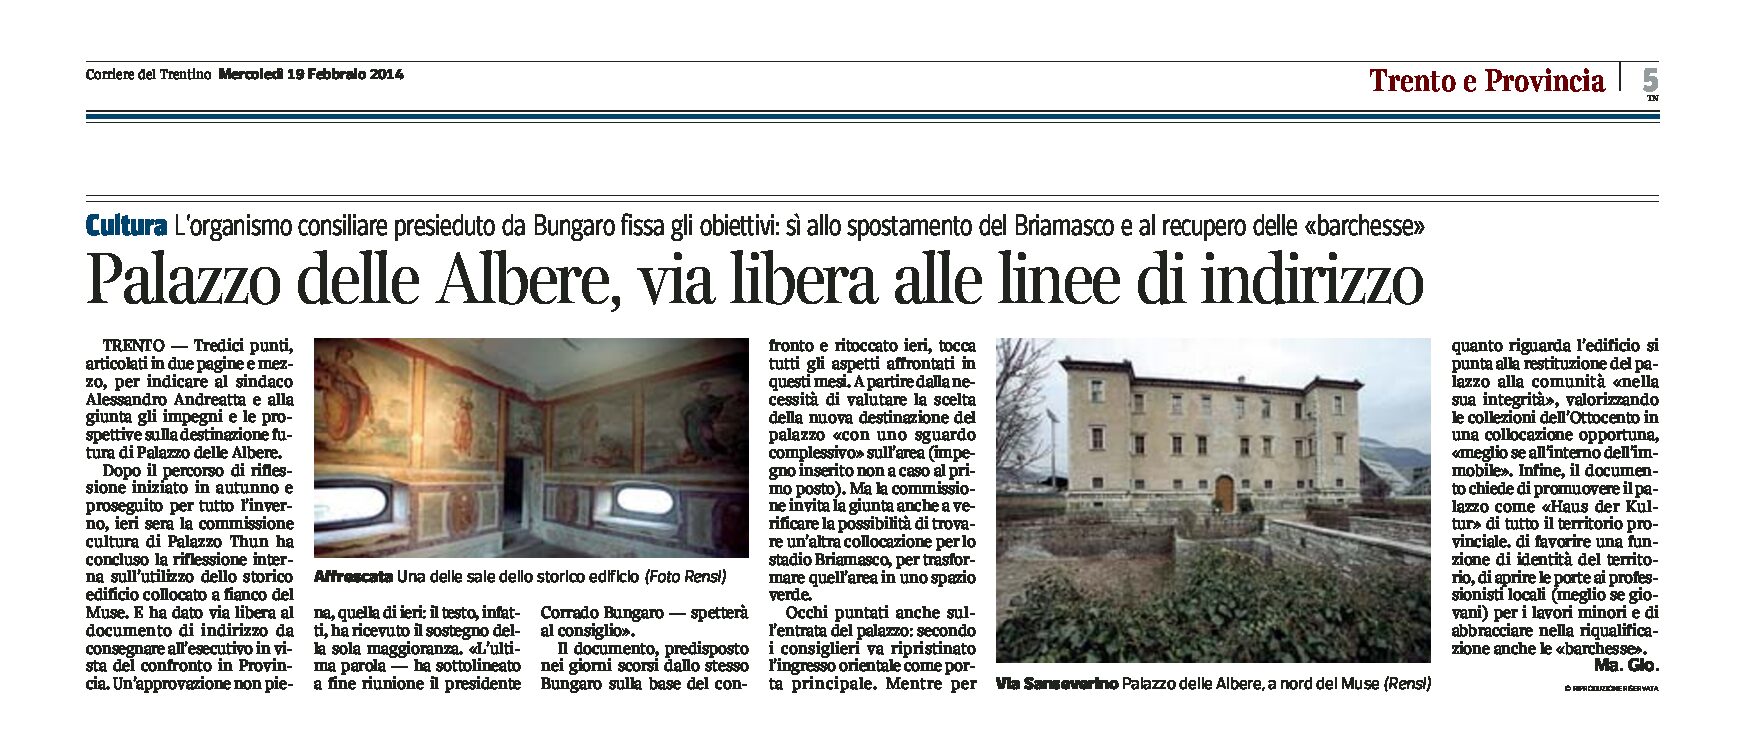 Trento: Palazzo delle Albere, via libera alle linee d’indirizzo